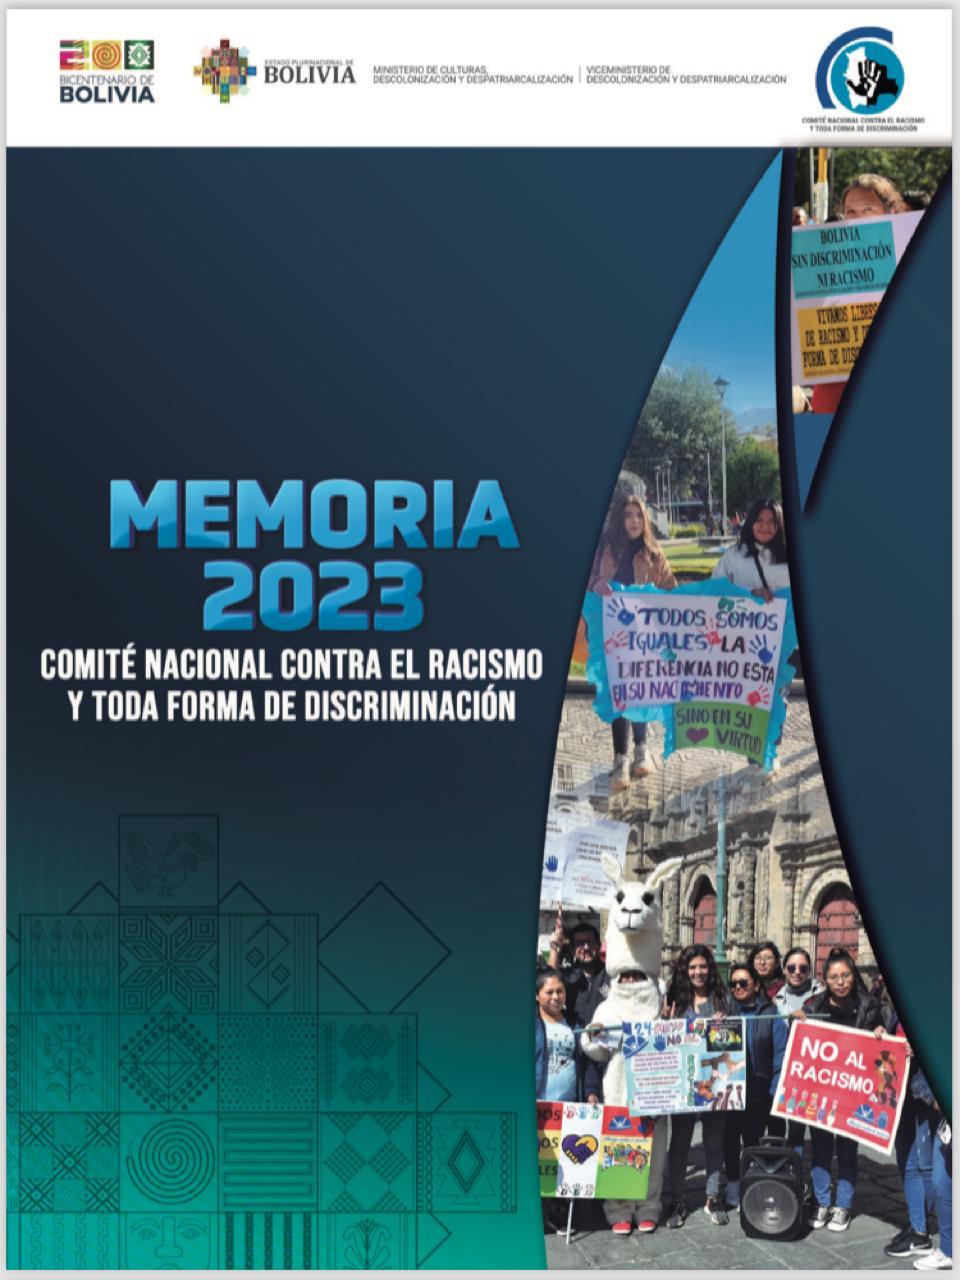 MEMORIA-2023 COMITE NACIONAL DE LUCHA CONTRA EL RACISMO Y TODA FORMA DE DISCRIMINACION